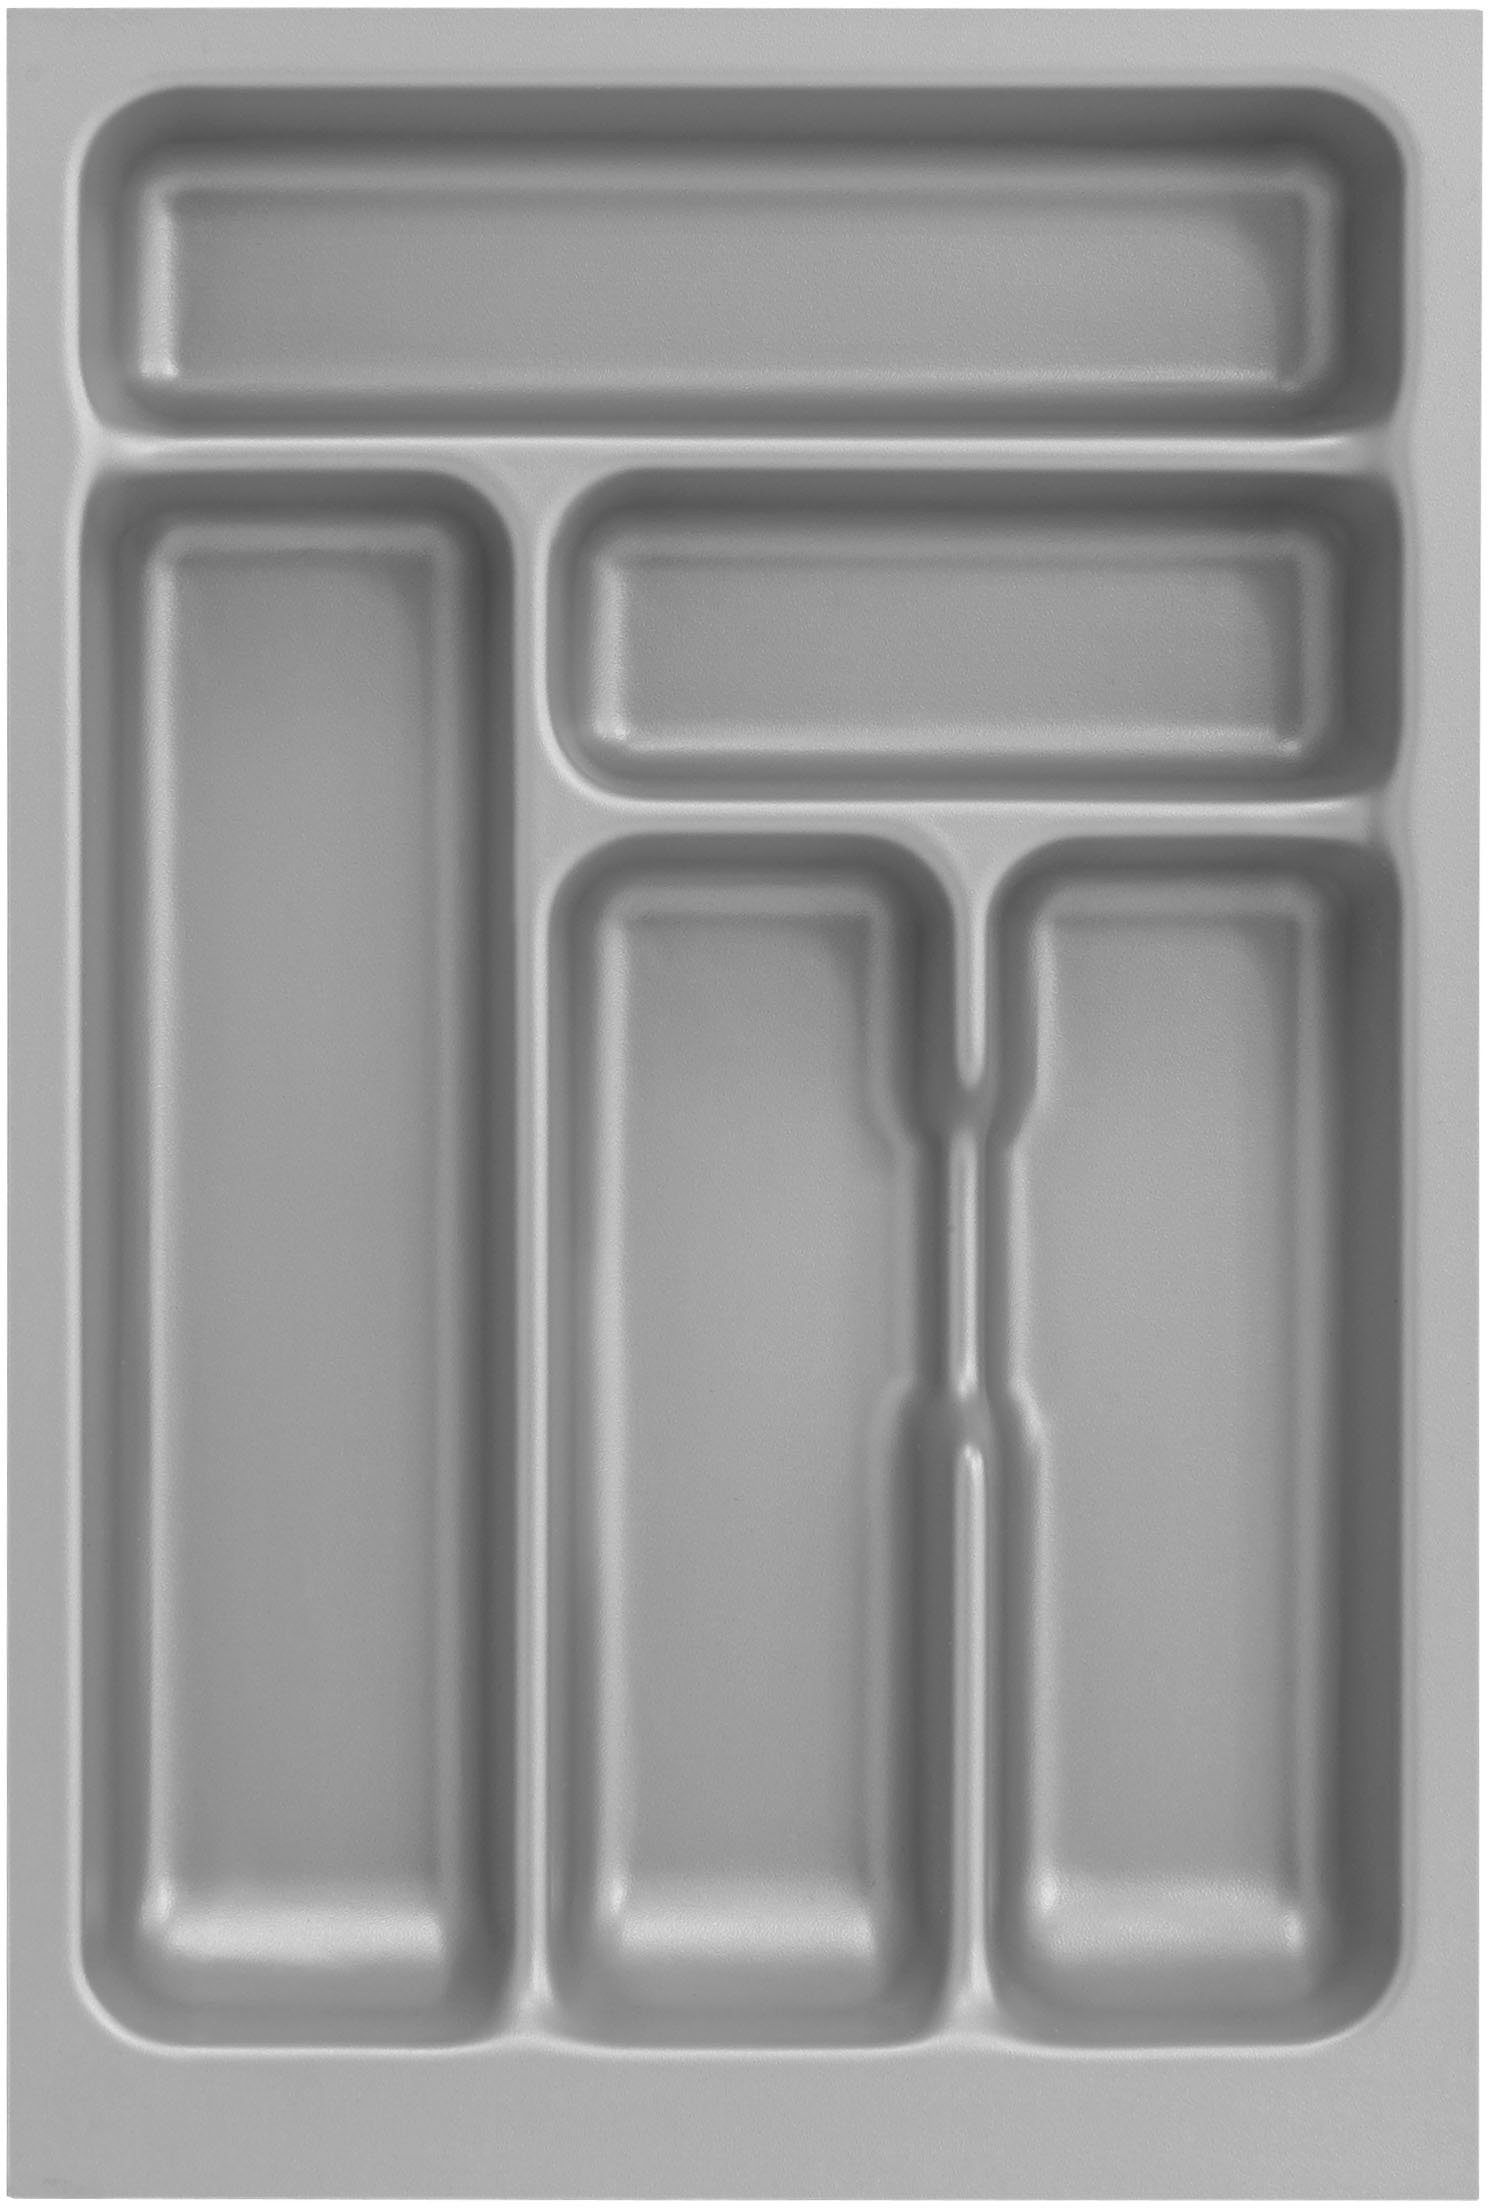 OPTIFIT Küche Safeli, wahlweise oder mit ohne 210 cm, Breite | wildeiche Hanseatic-E-Geräte wildeiche/wildeiche